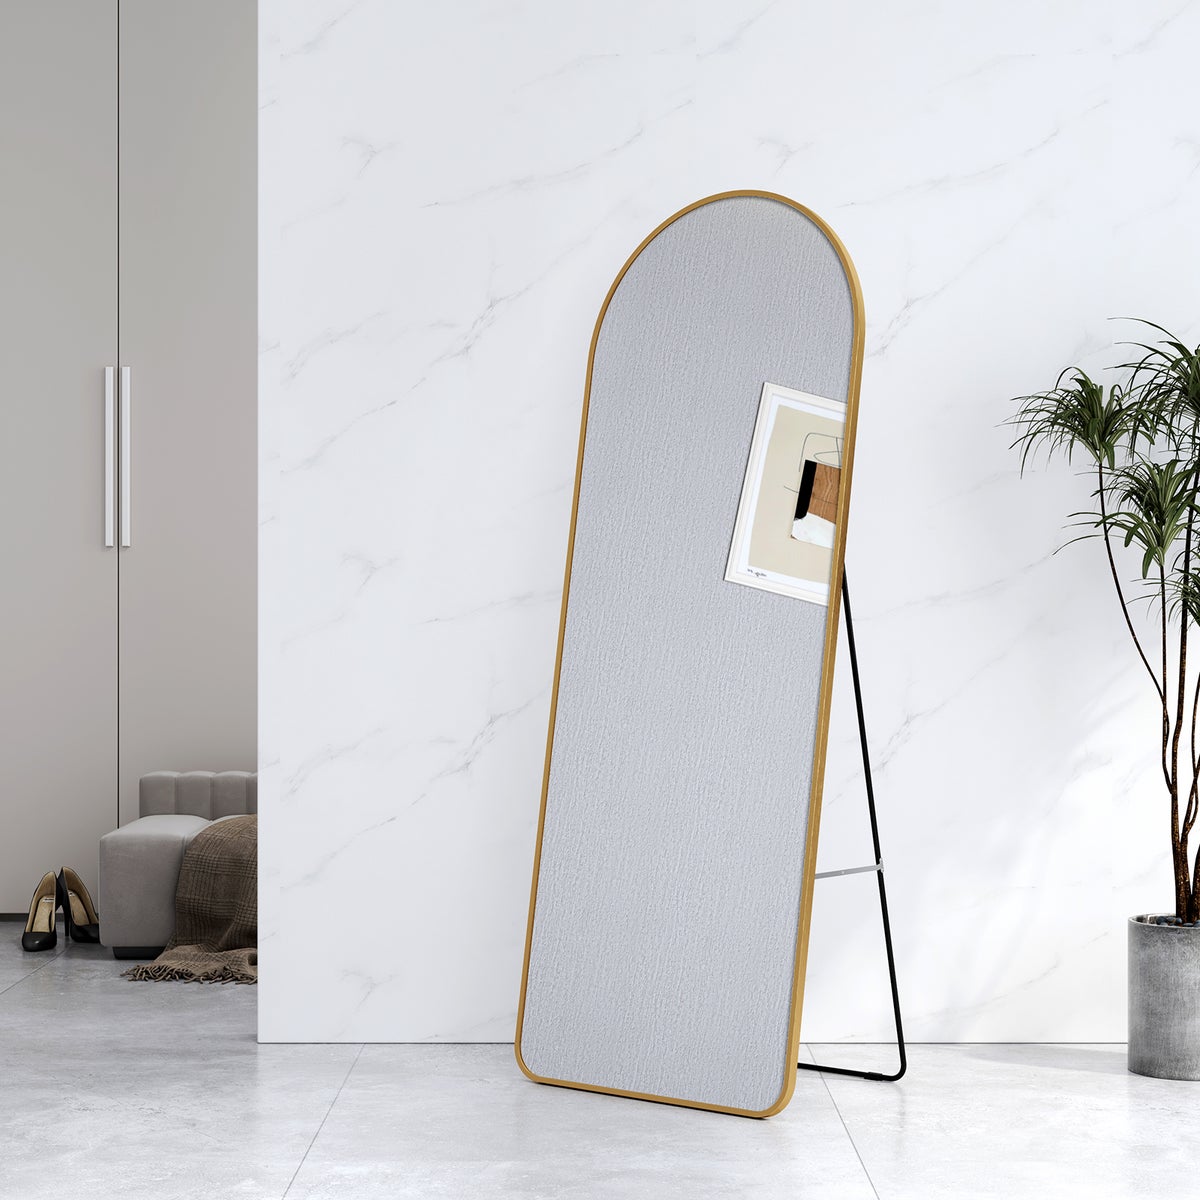 EMKE Bogen Standspiegel Ganzkörperspiegel mit Rahmen aus Aluminiumlegierung für Wohn-,Schlaf-, Aufenthalt und Ankleidezimmer, Gold, 160x60cm